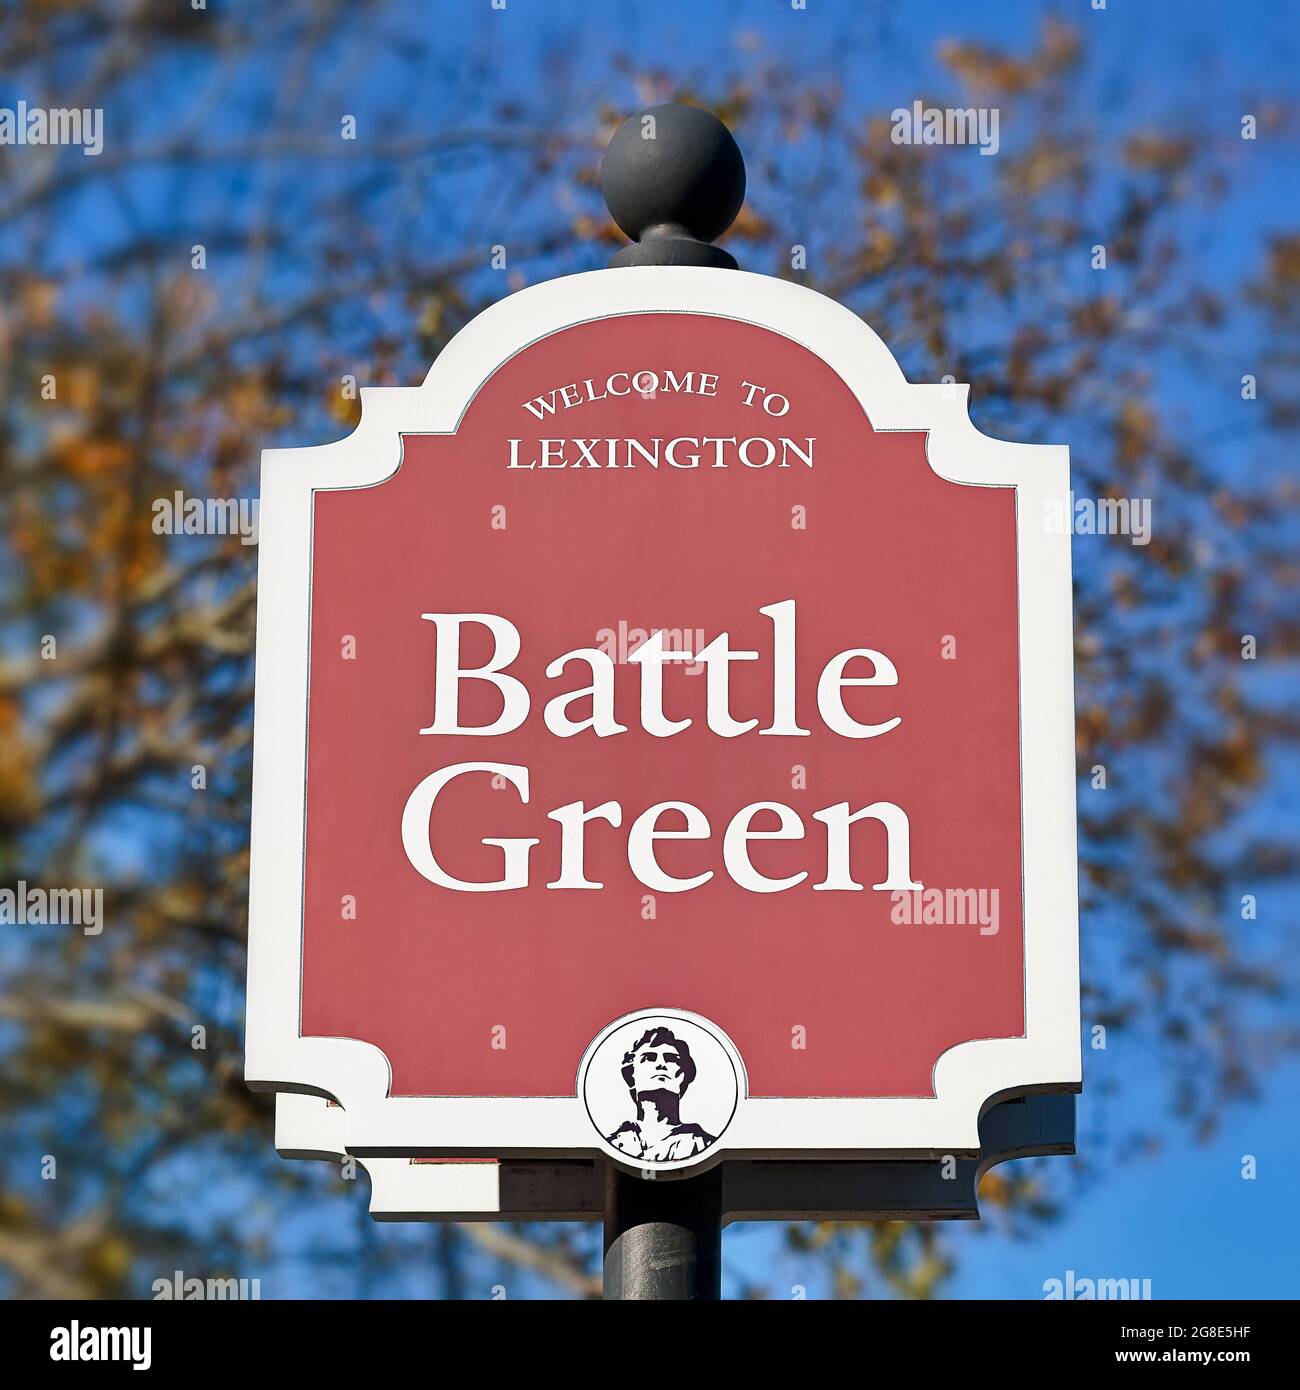 Panneau qui indique Bienvenue à Lexington Battle Green, Lexington, Massachusetts, États-Unis Banque D'Images